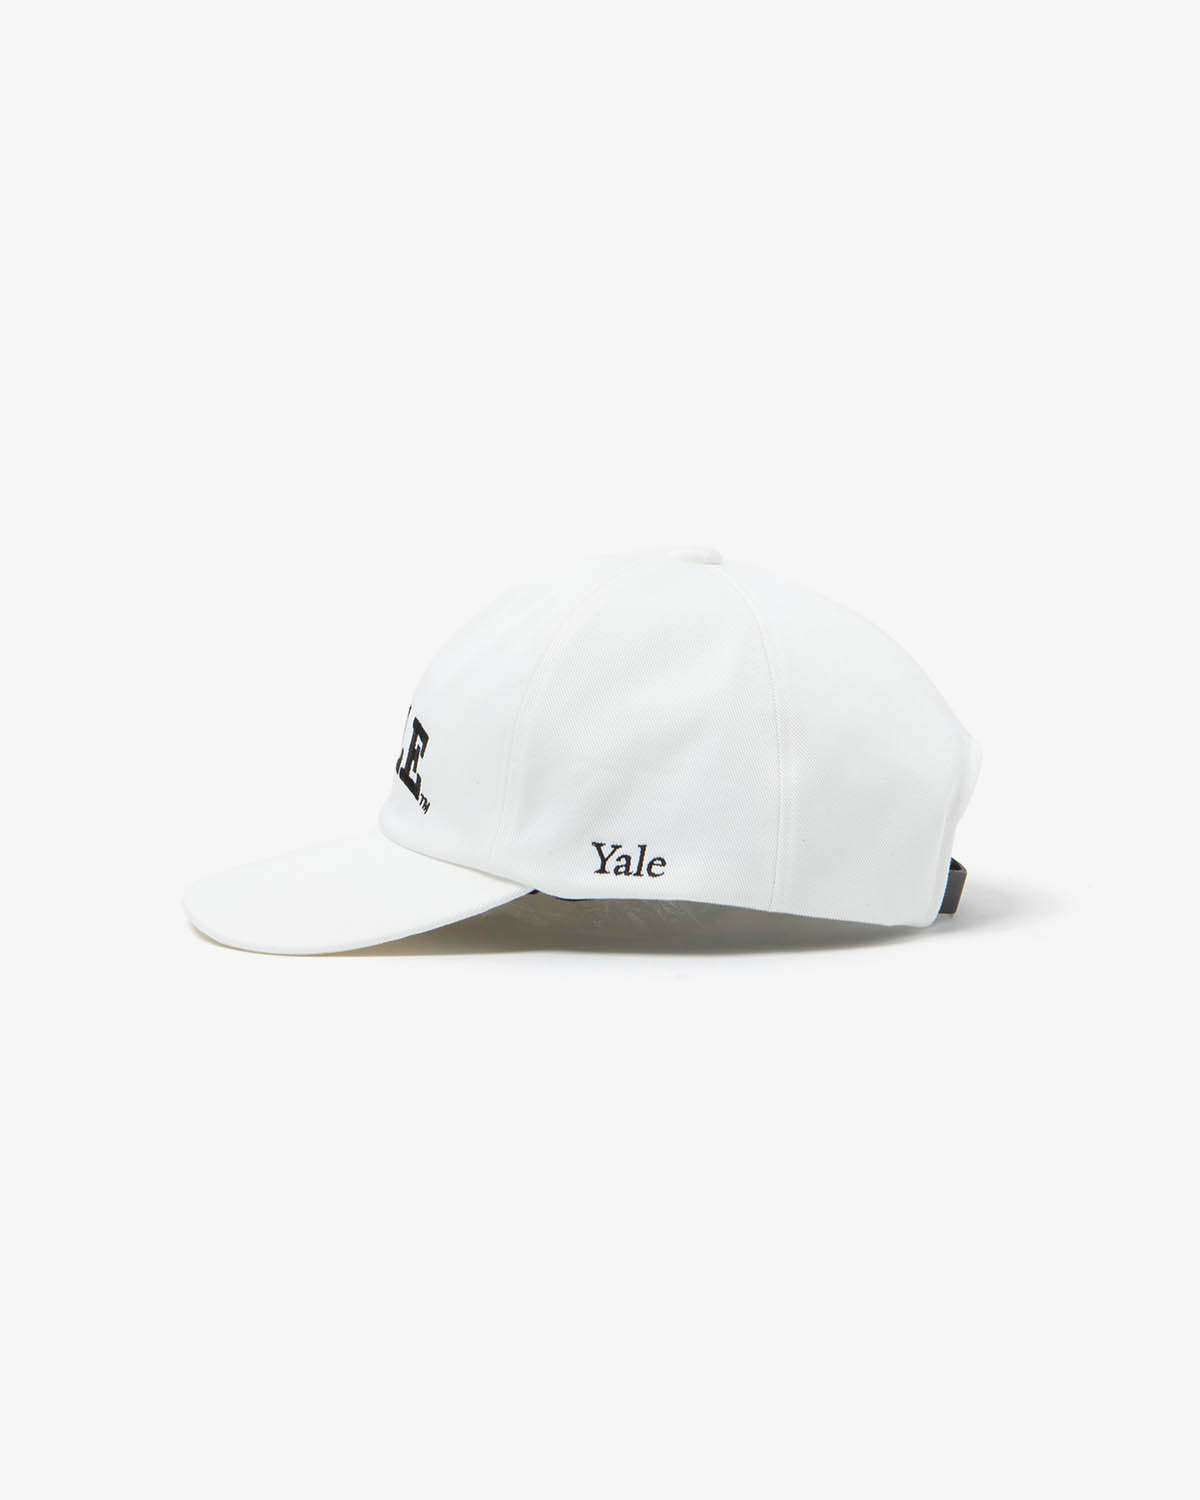 YALE CAP (WOMEN'S)